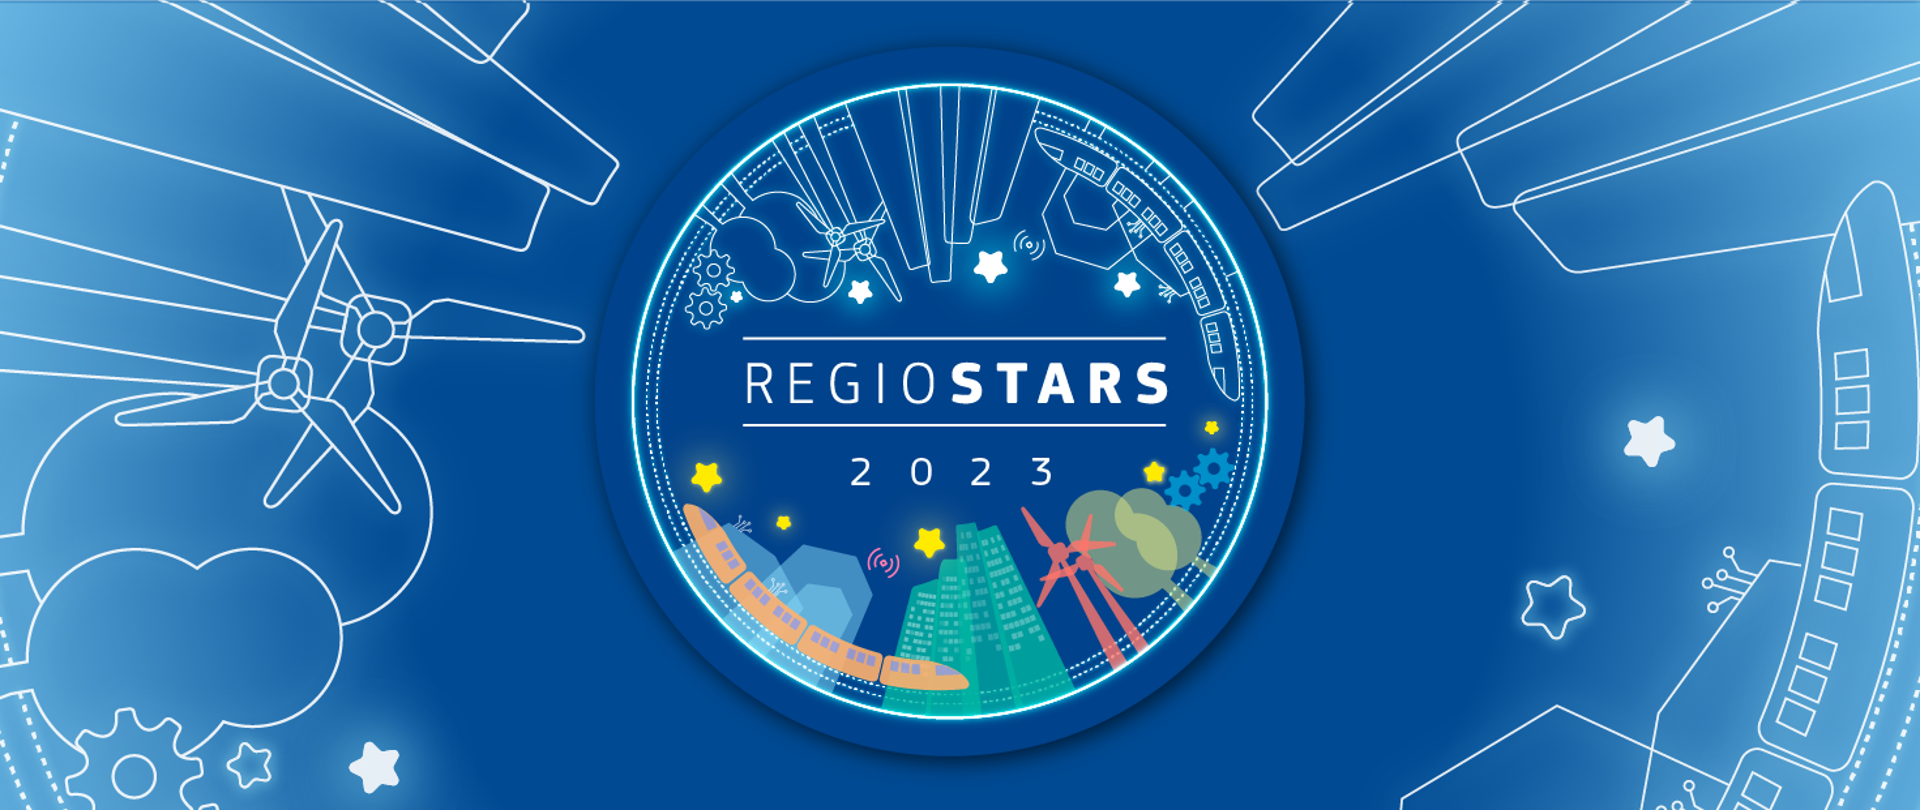 Sięgaj gwiazd! Zgłoś swój projekt do konkursu REGIOSTARS 2023